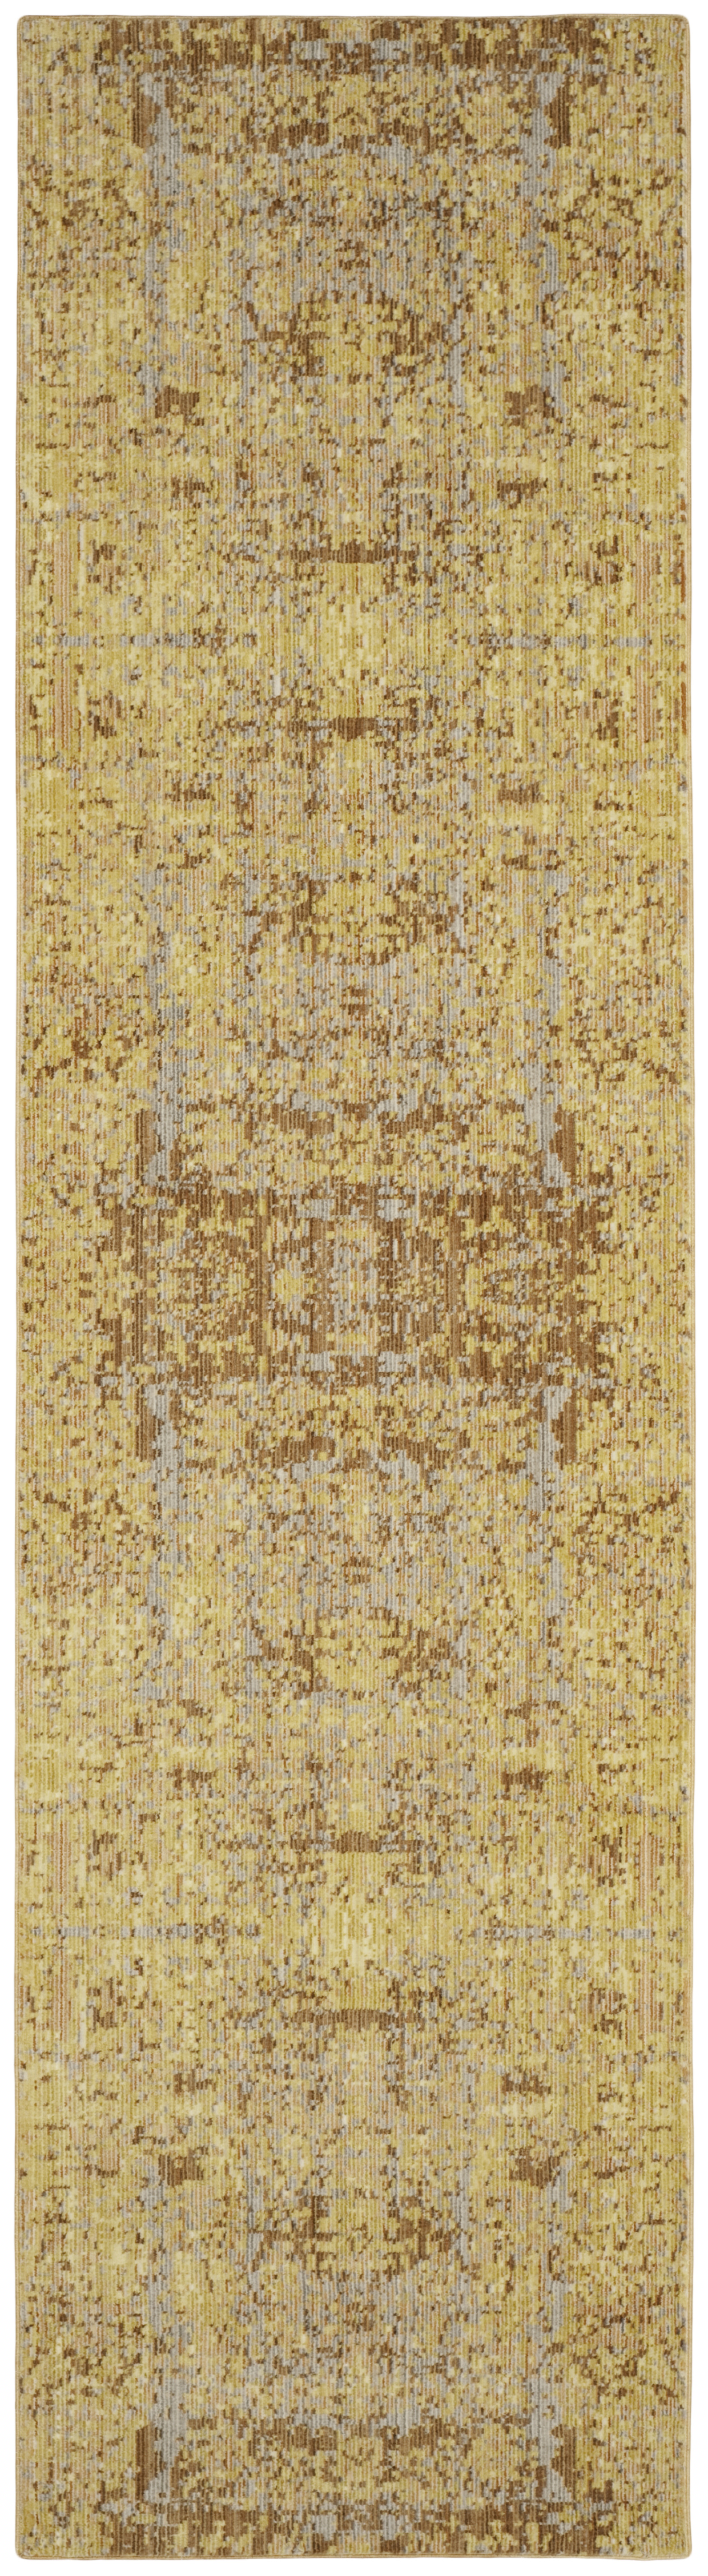 Tapis de salon interieur en or & multicolore, 69 x 244 cm